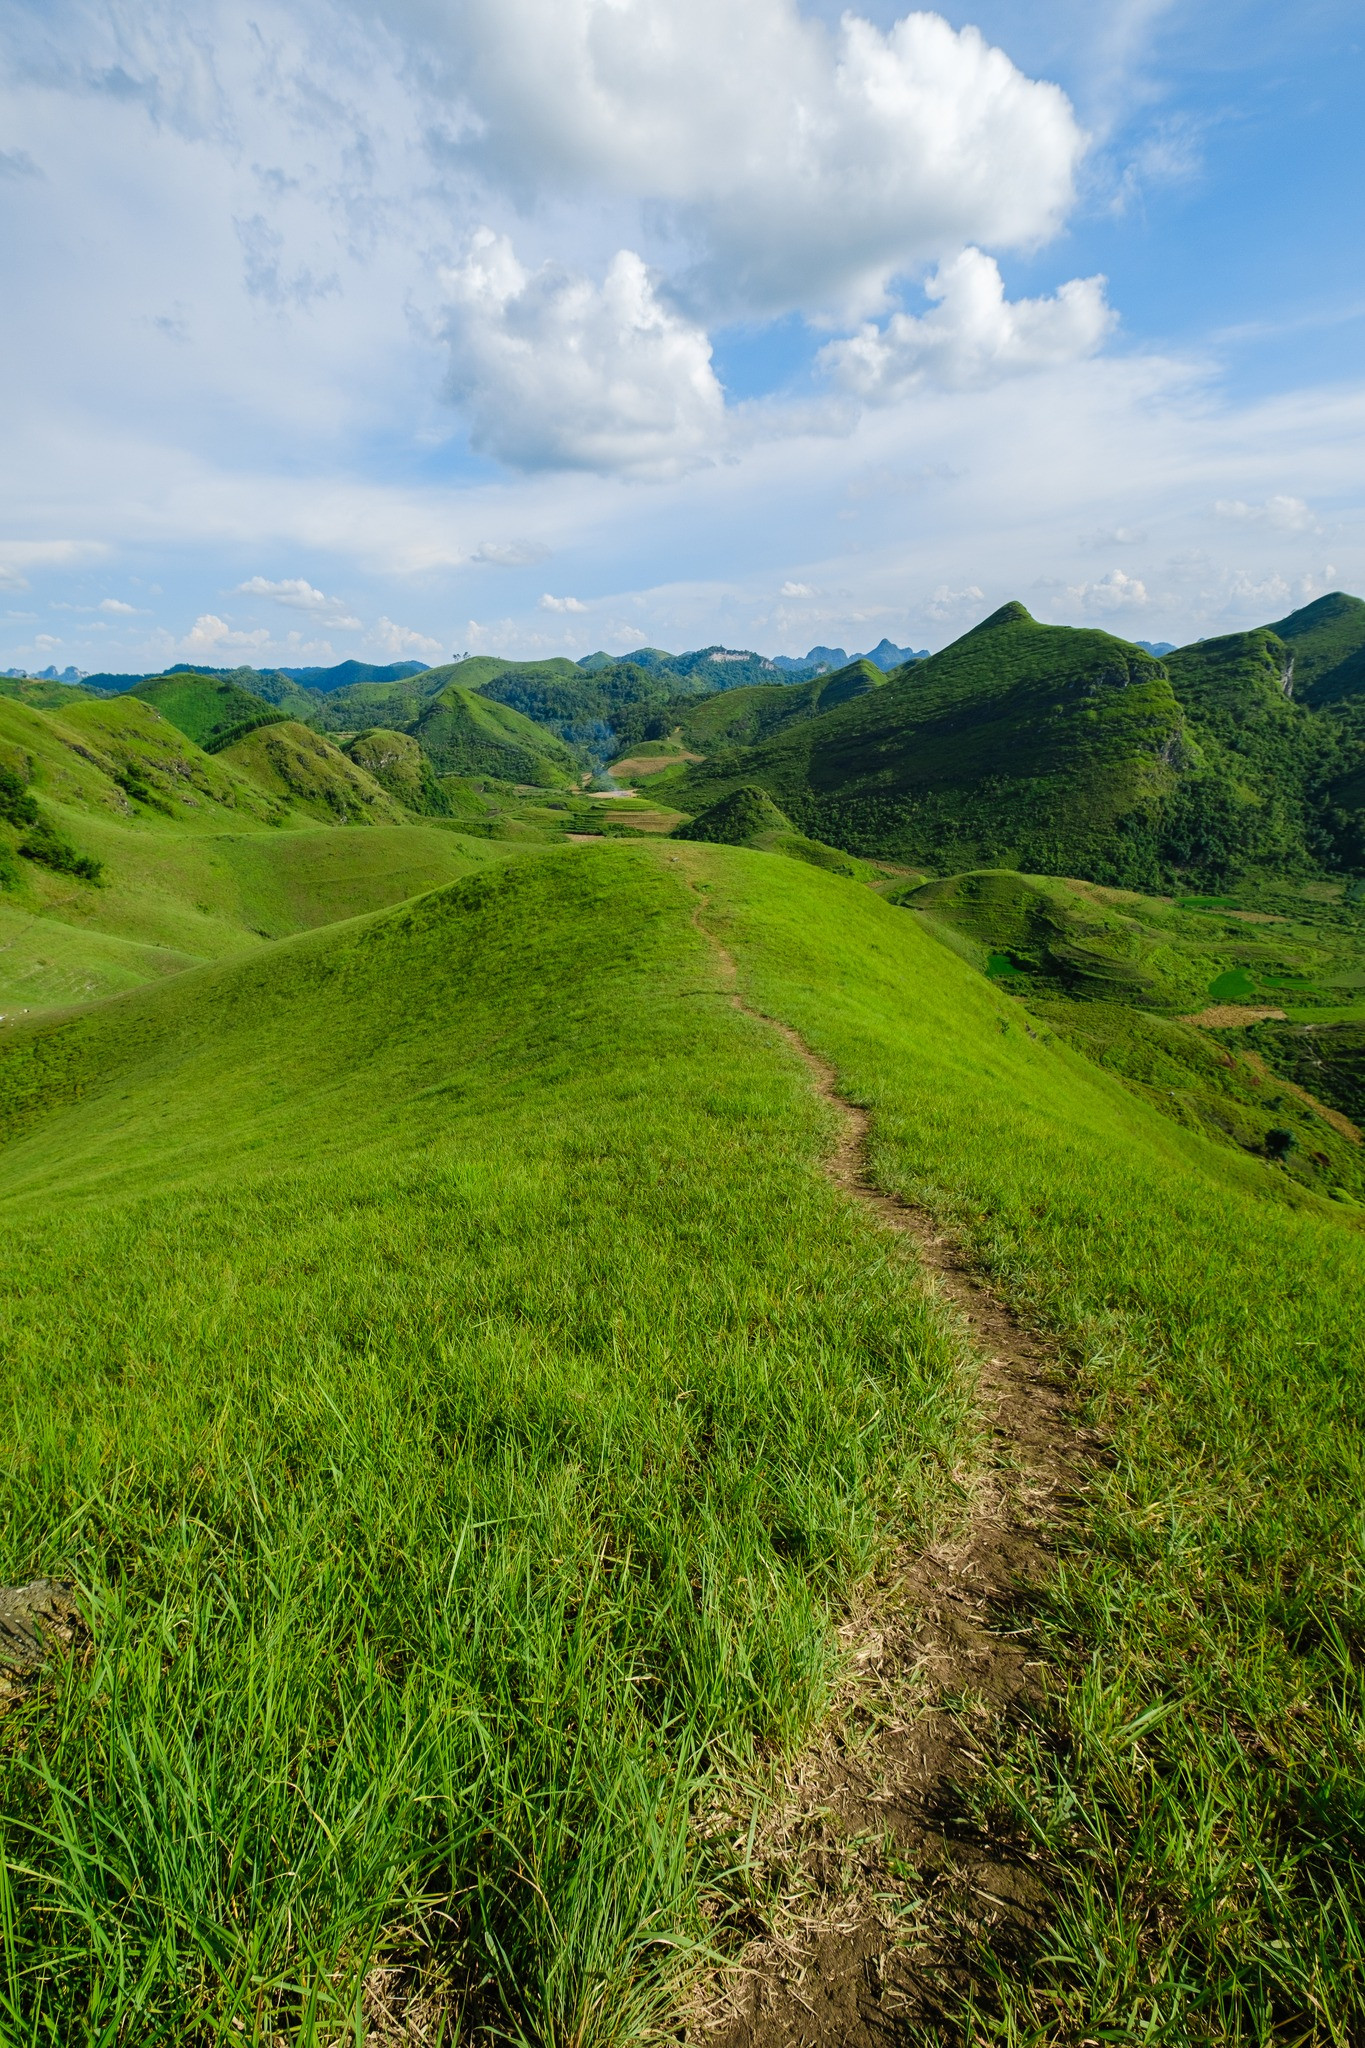 Mê mẩn đồi cỏ xanh rì, check-in siêu đẹp tại địa điểm này ở Cao Bằng- Ảnh 5.